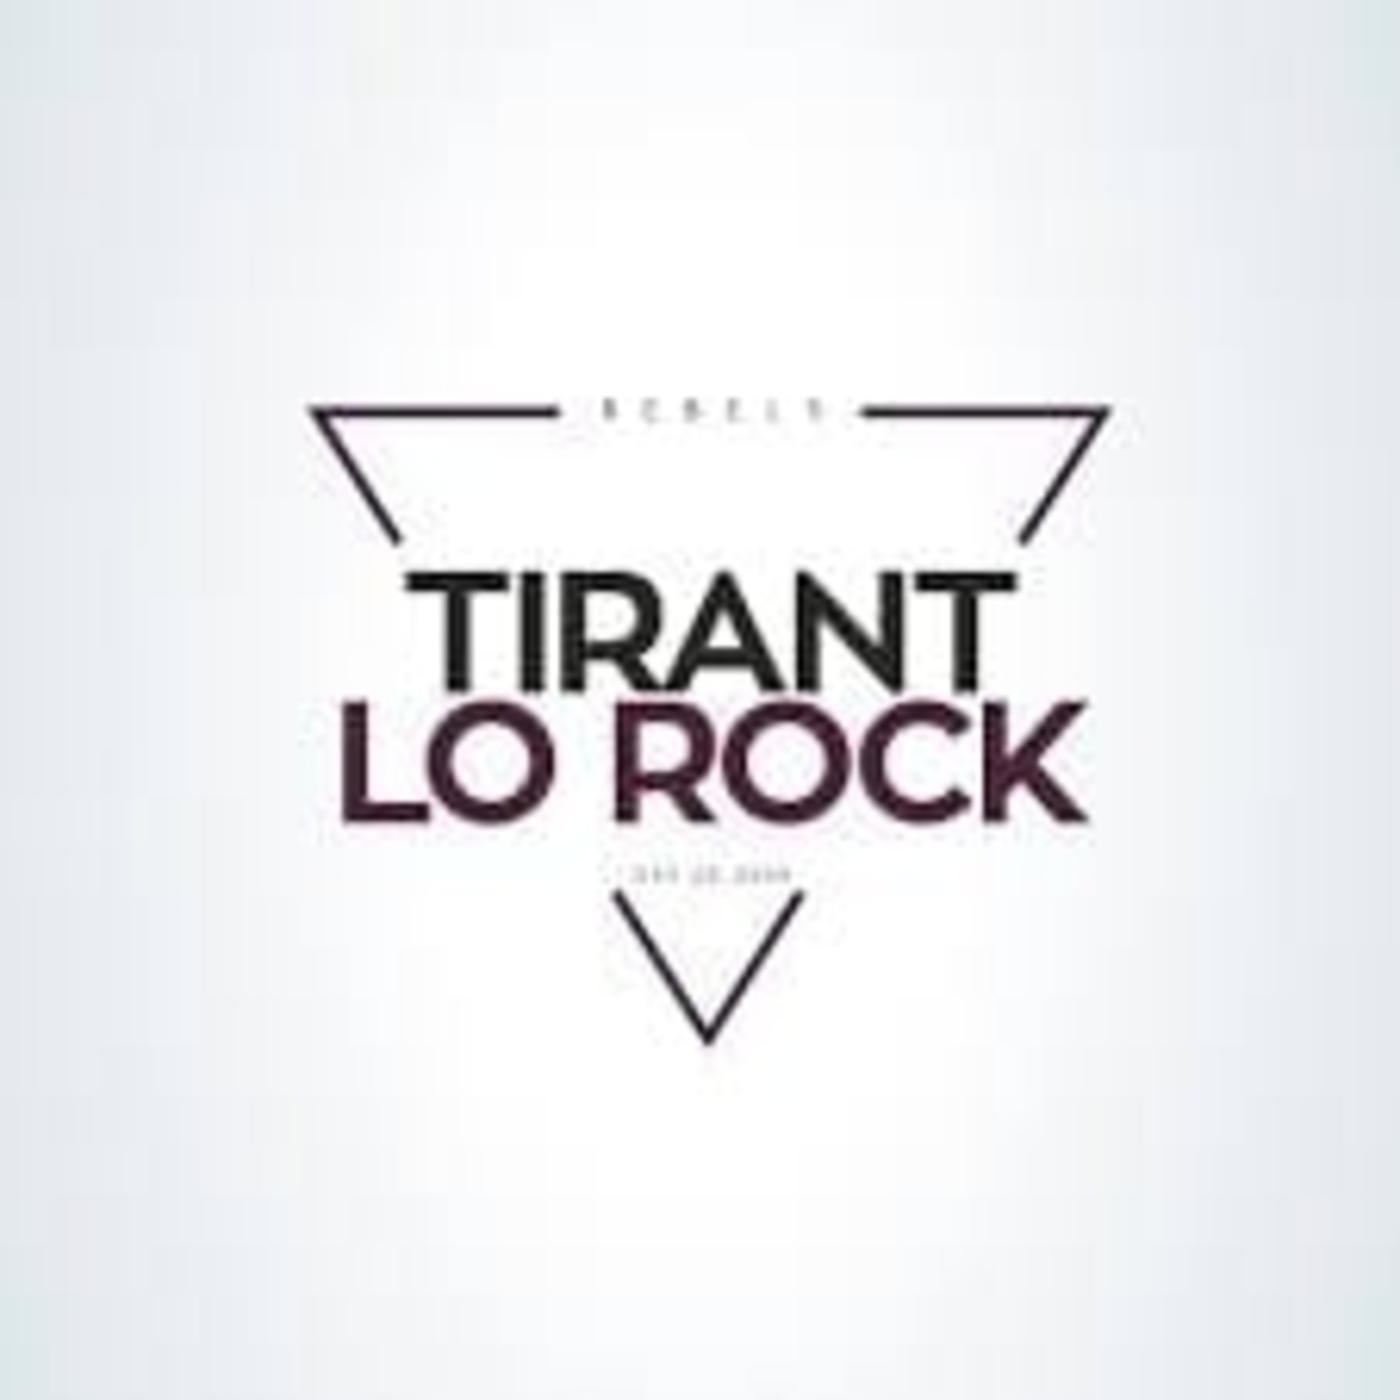 Tirant lo Rock | musica en valencià